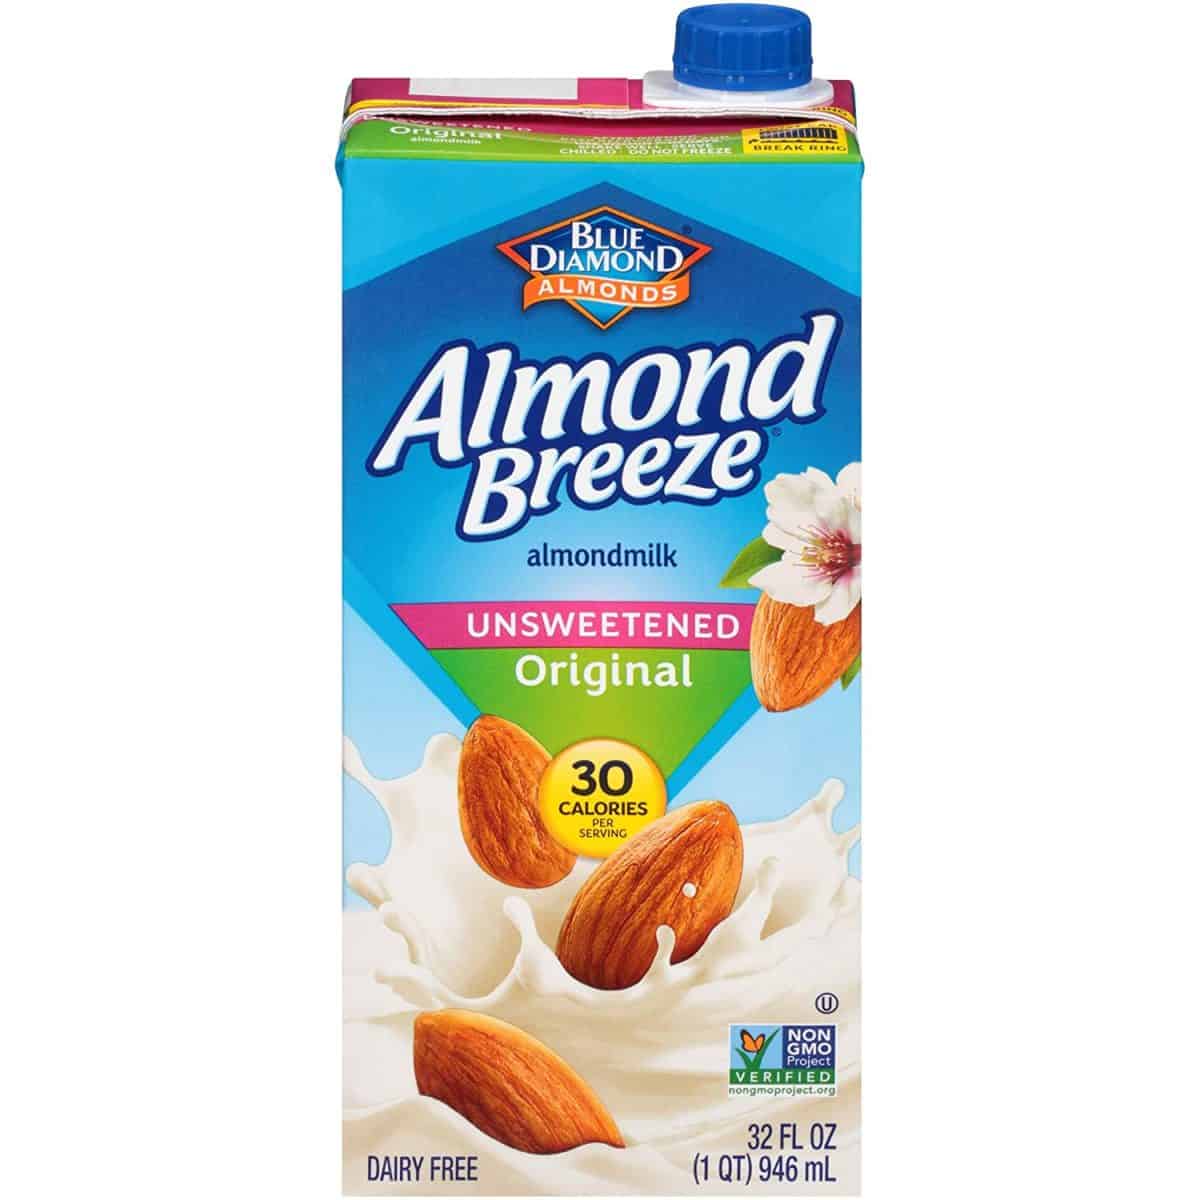 ココナッツミルクの良い代替品としてのアーモンドミルク